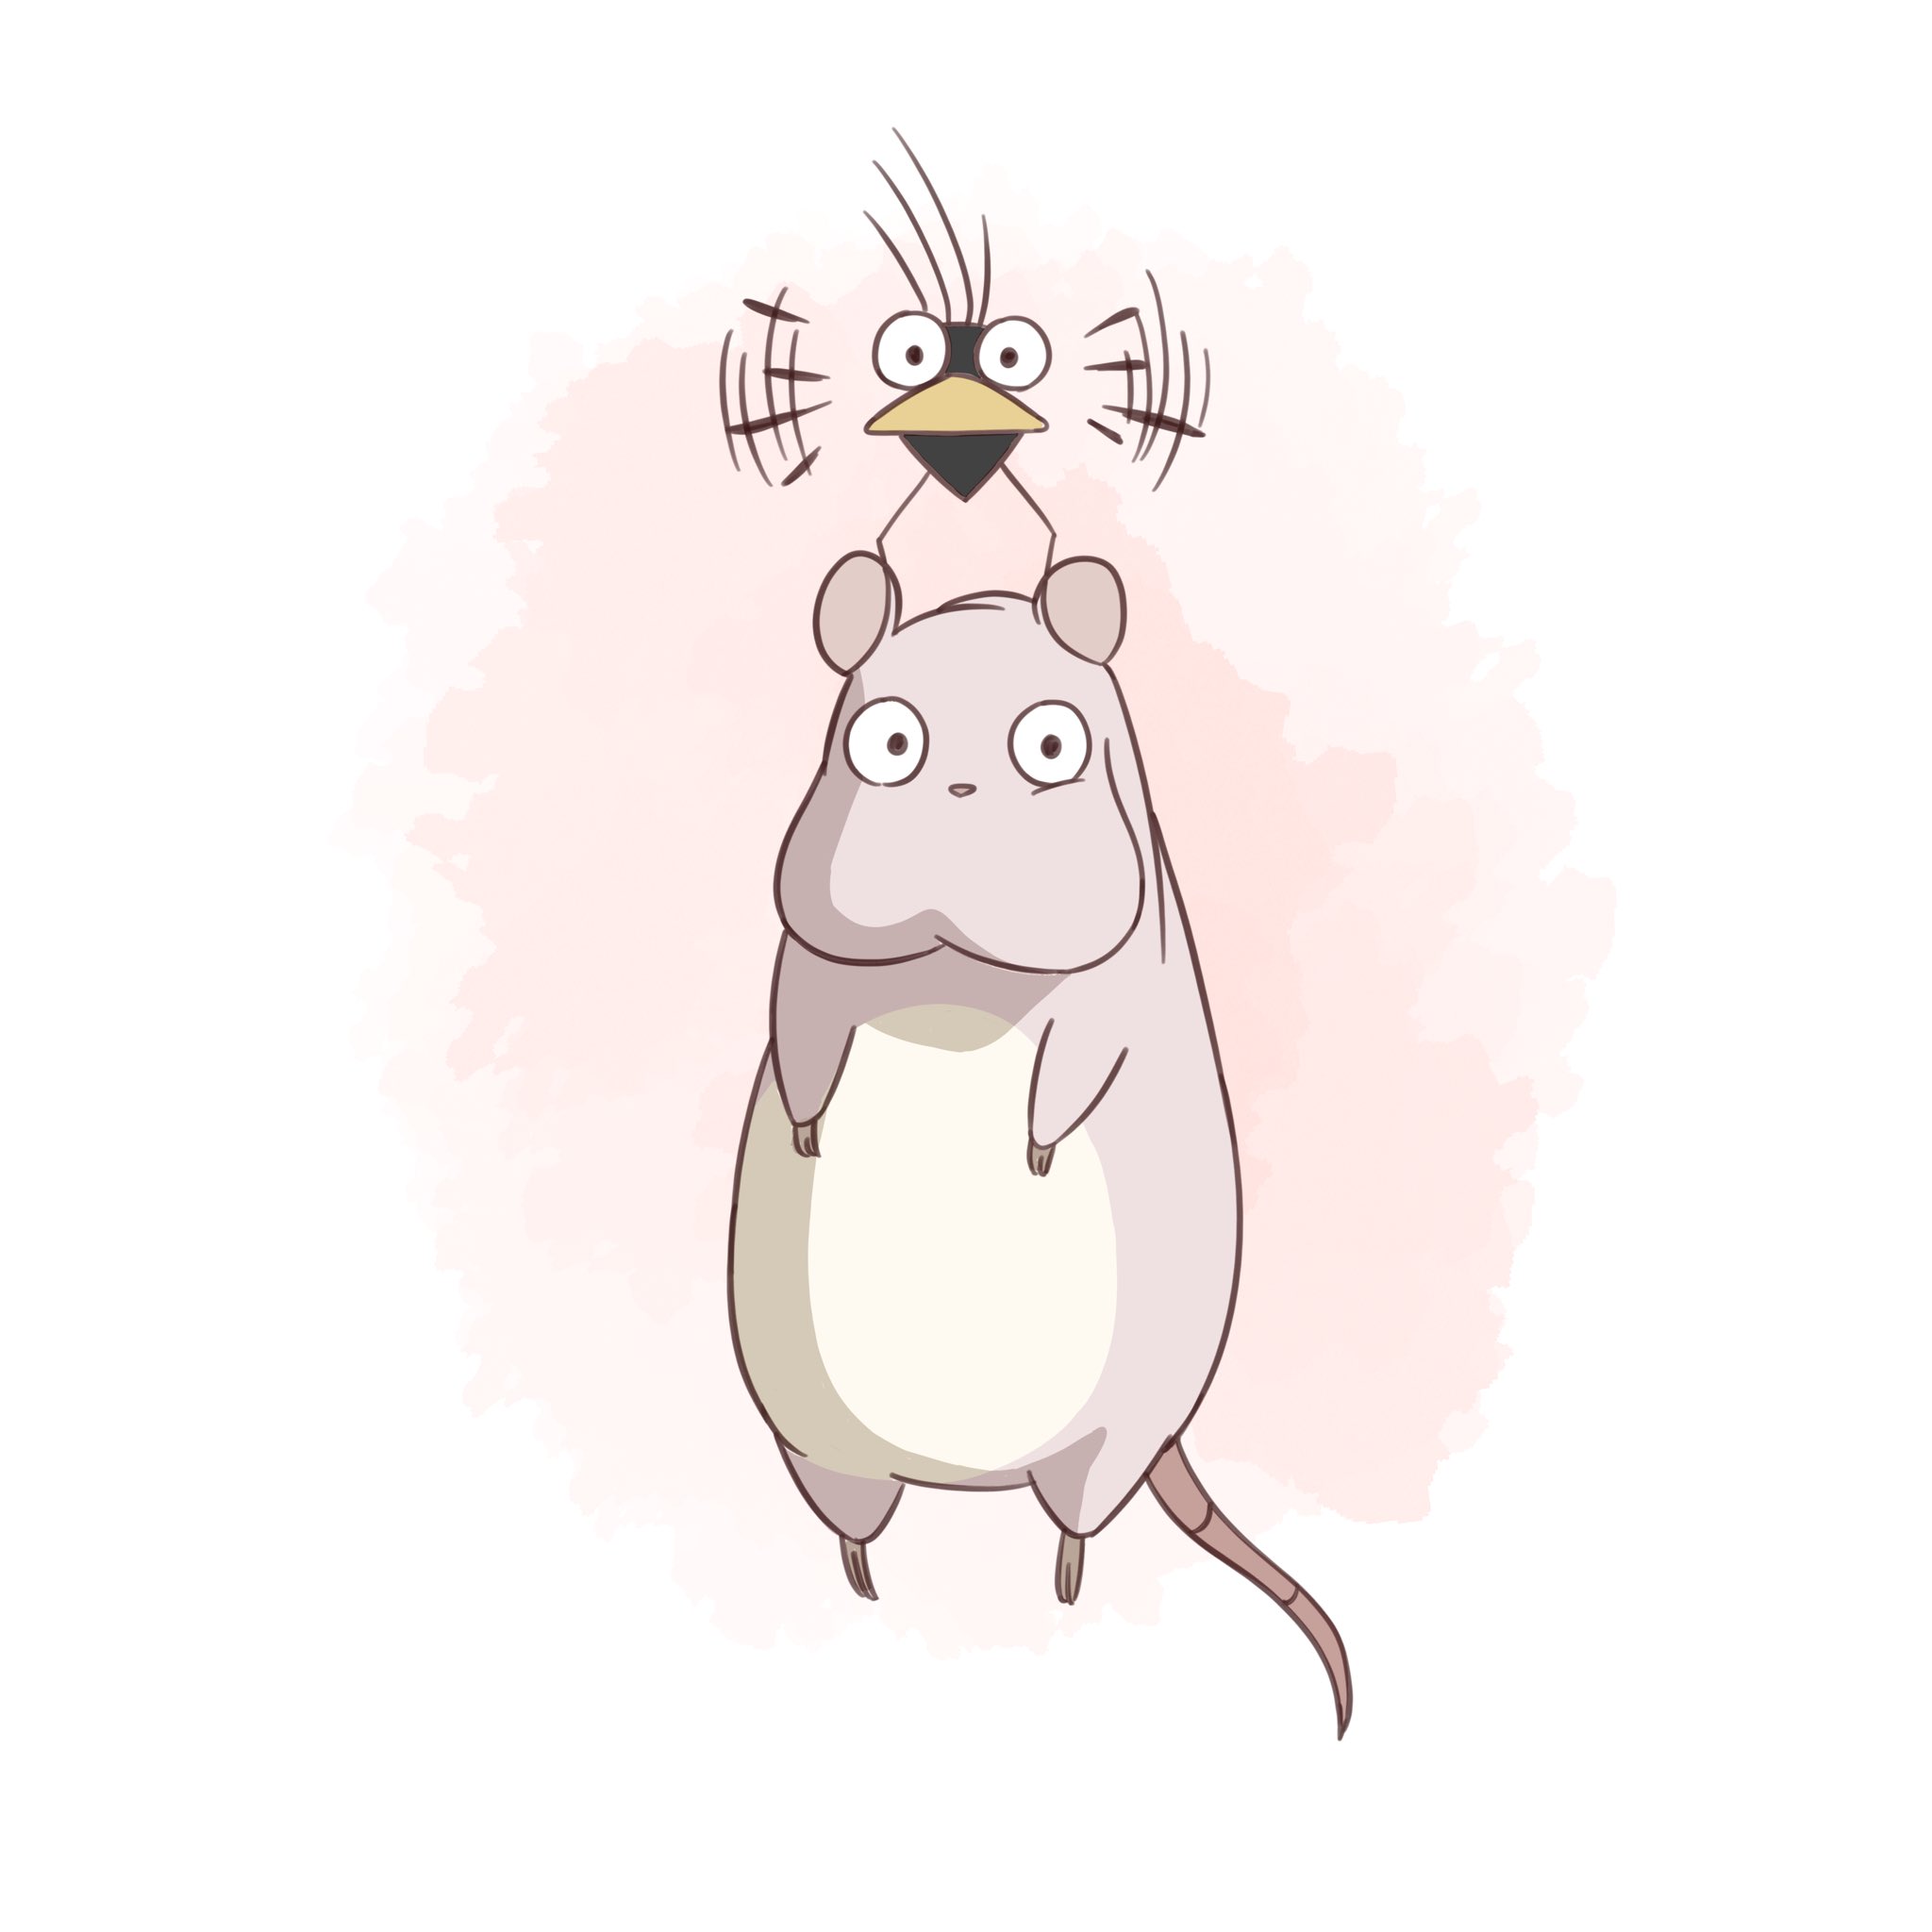 Twitter 上的 ゆう 坊ネズミとハエドリ描きました この2匹可愛いですよね 千と千尋の神隠し 坊ネズミ ハエドリ ジブリ イラスト 絵描きさんと繋がりたい Studioghibli T Co On0rlvpo1h Twitter